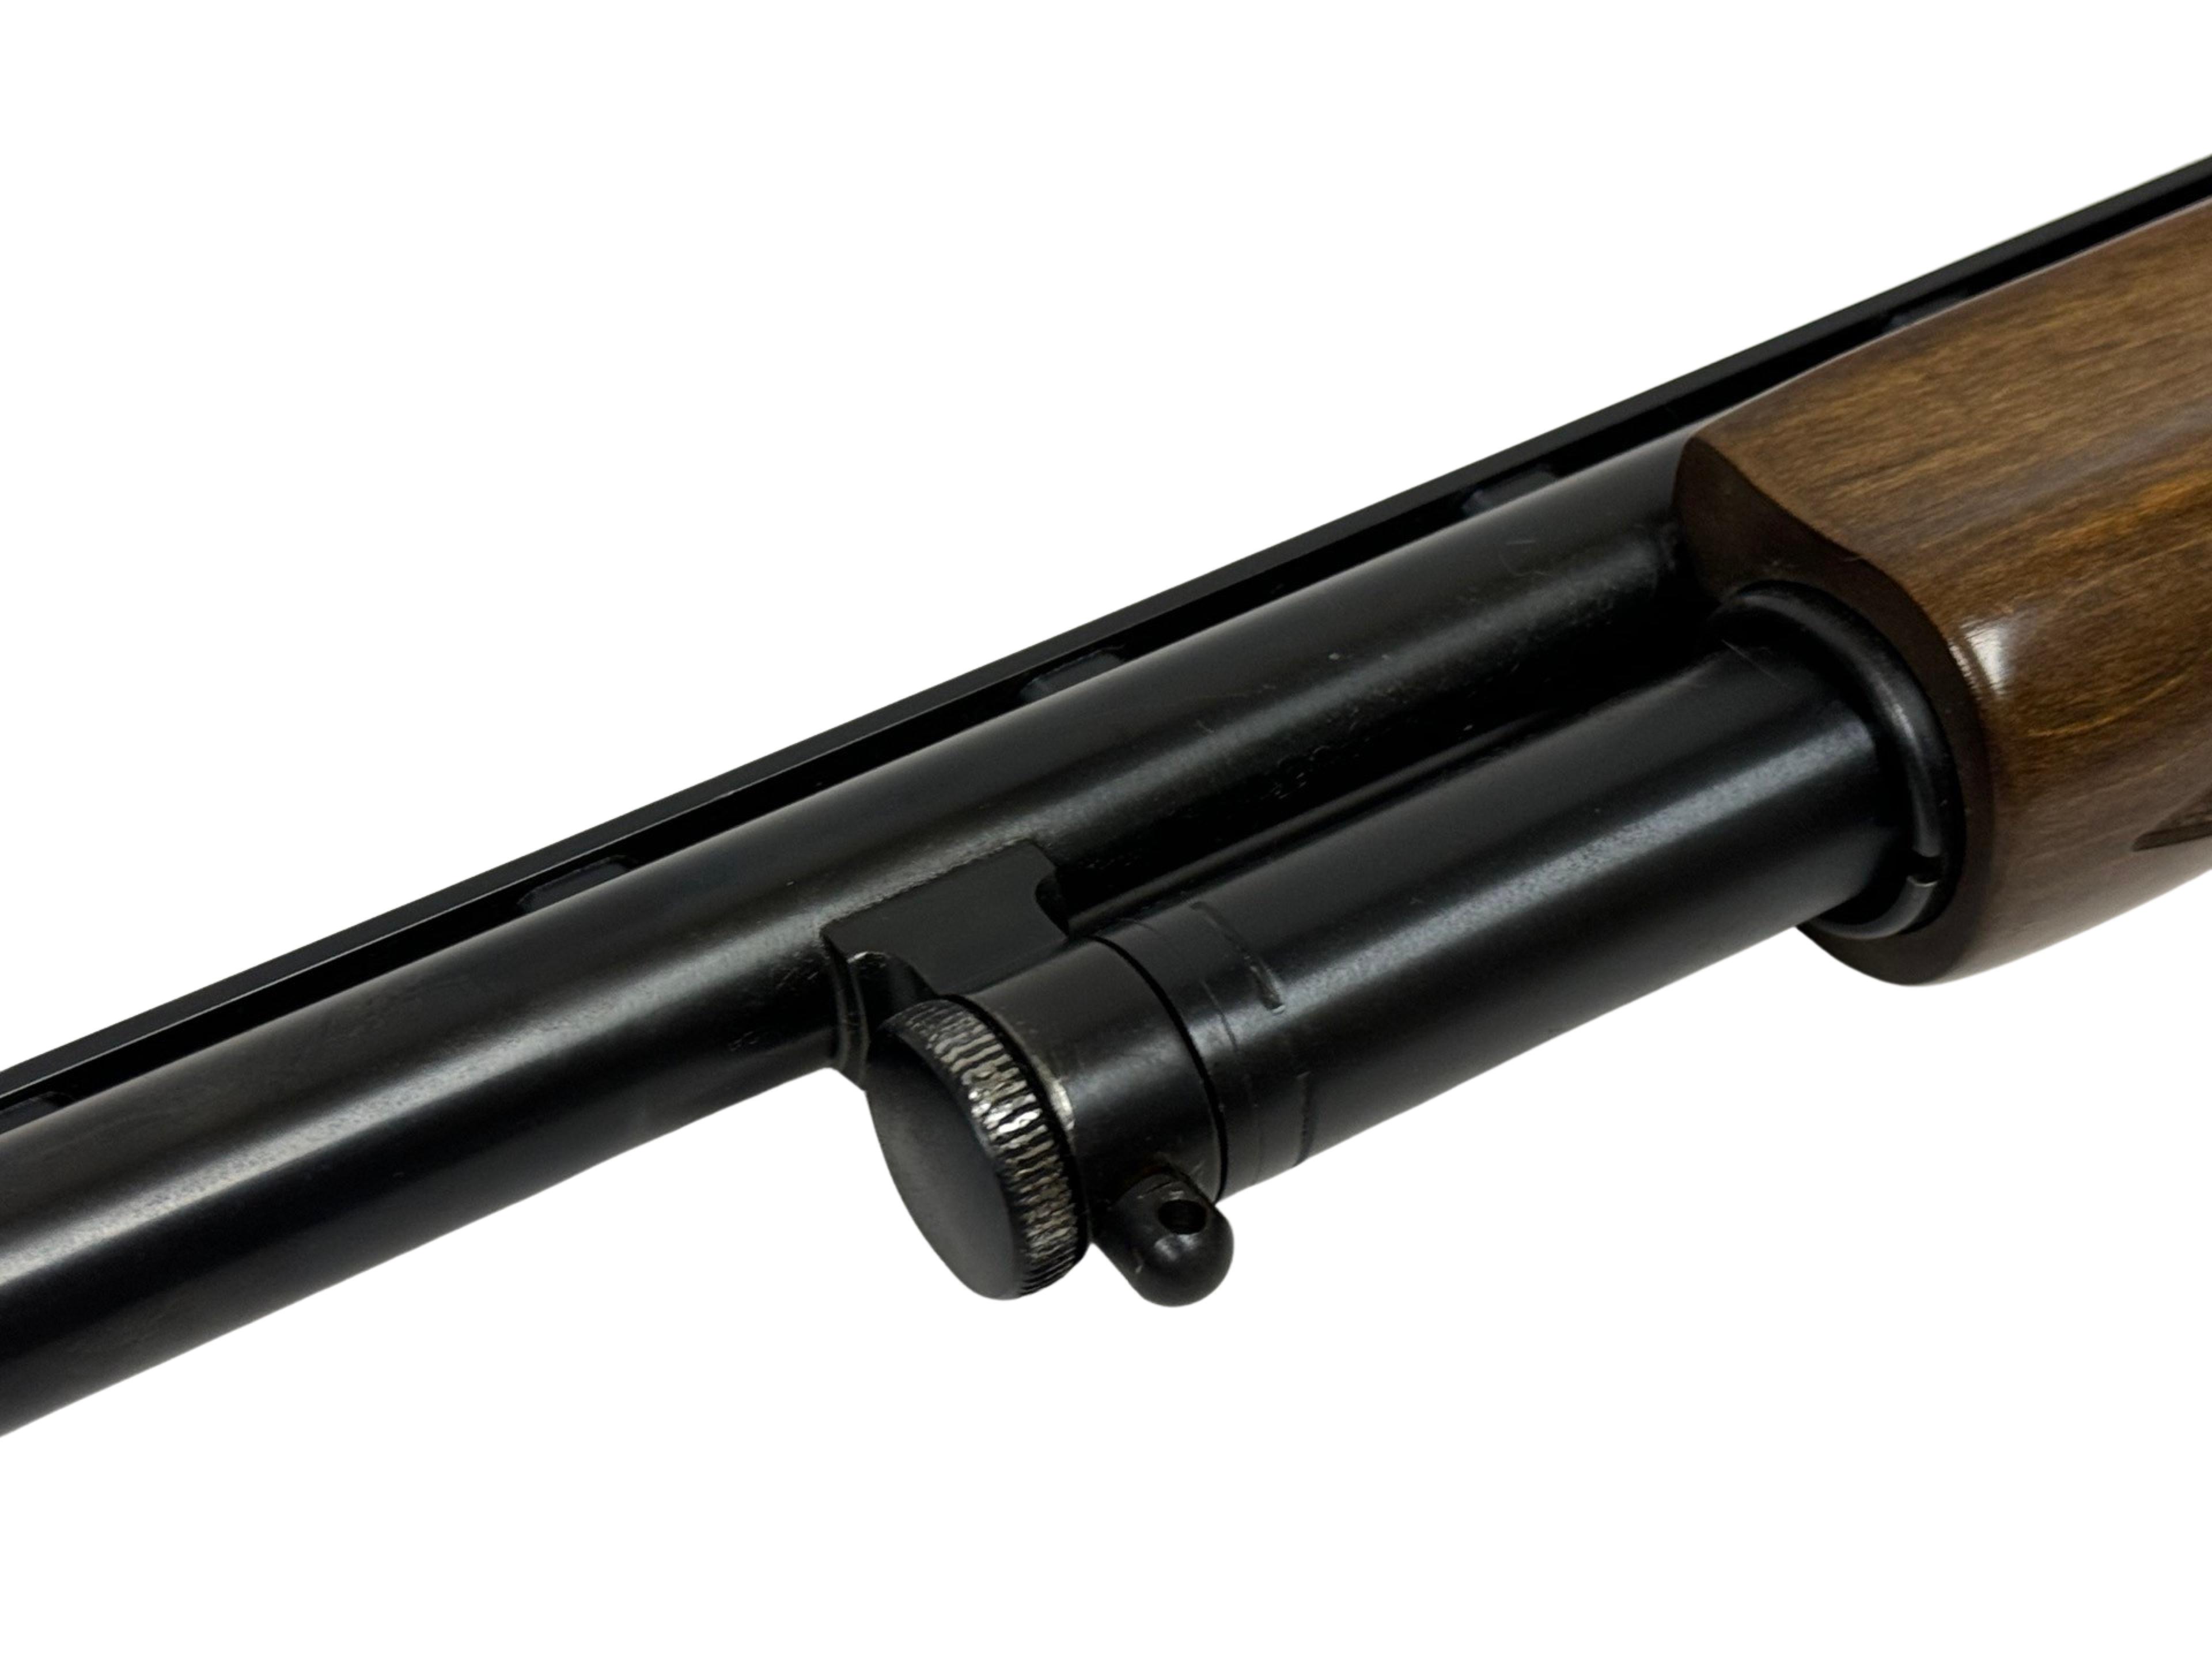 Excellent Mossberg Model 500A 12 GA. Pump Action Shotgun with Vent-Rib Barrel